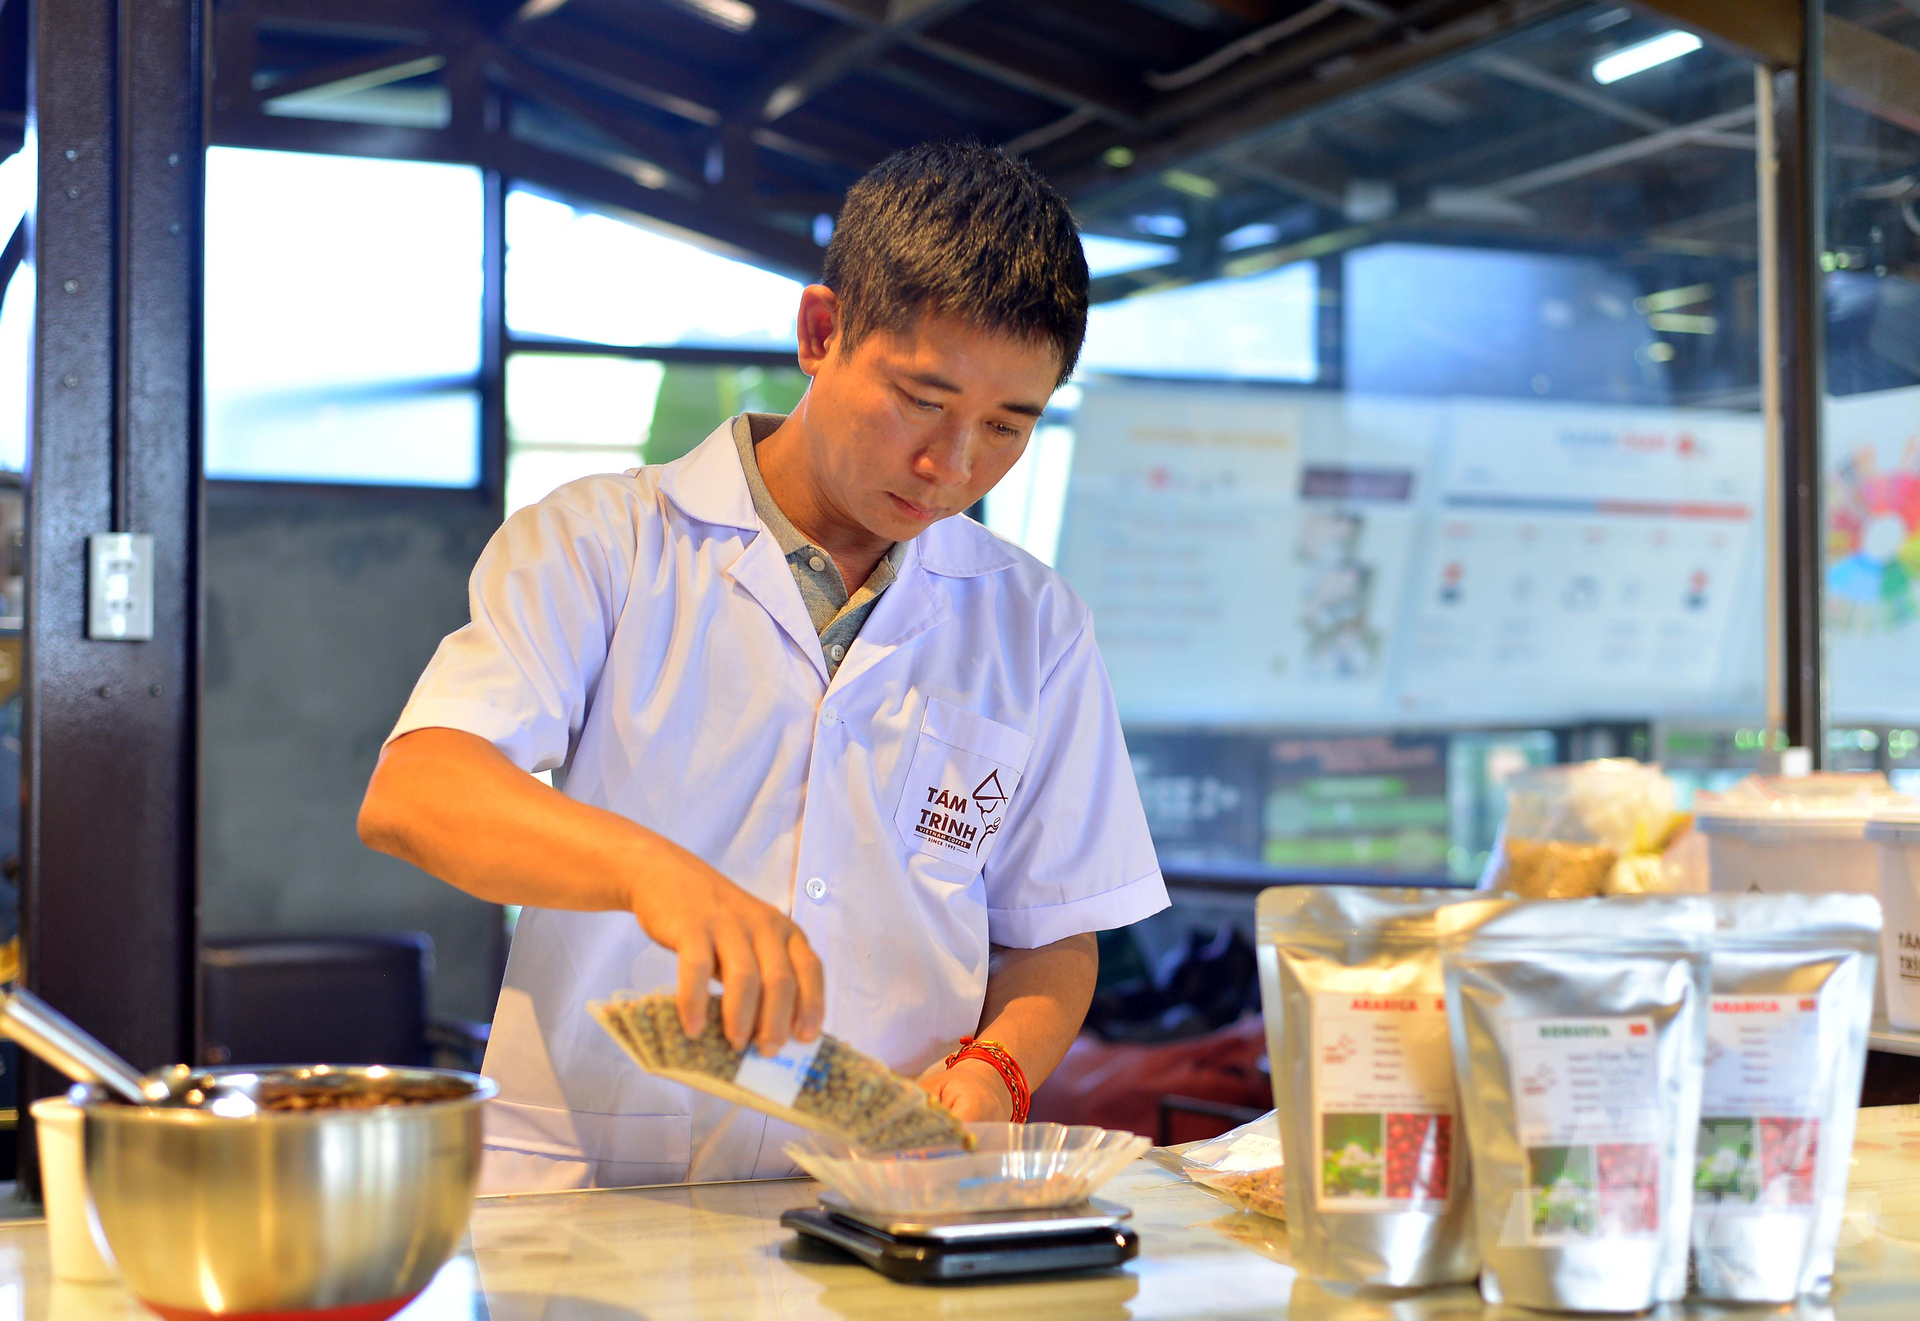 Công ty Xuất nhập khẩu Tám Trình (Lâm Hà, Lâm Đồng) đang liên kết với 3.000 hộ dân trong tỉnh xây dựng vùng nguyên liệu cà phê chất lượng cao. Ảnh: Minh Hậu.